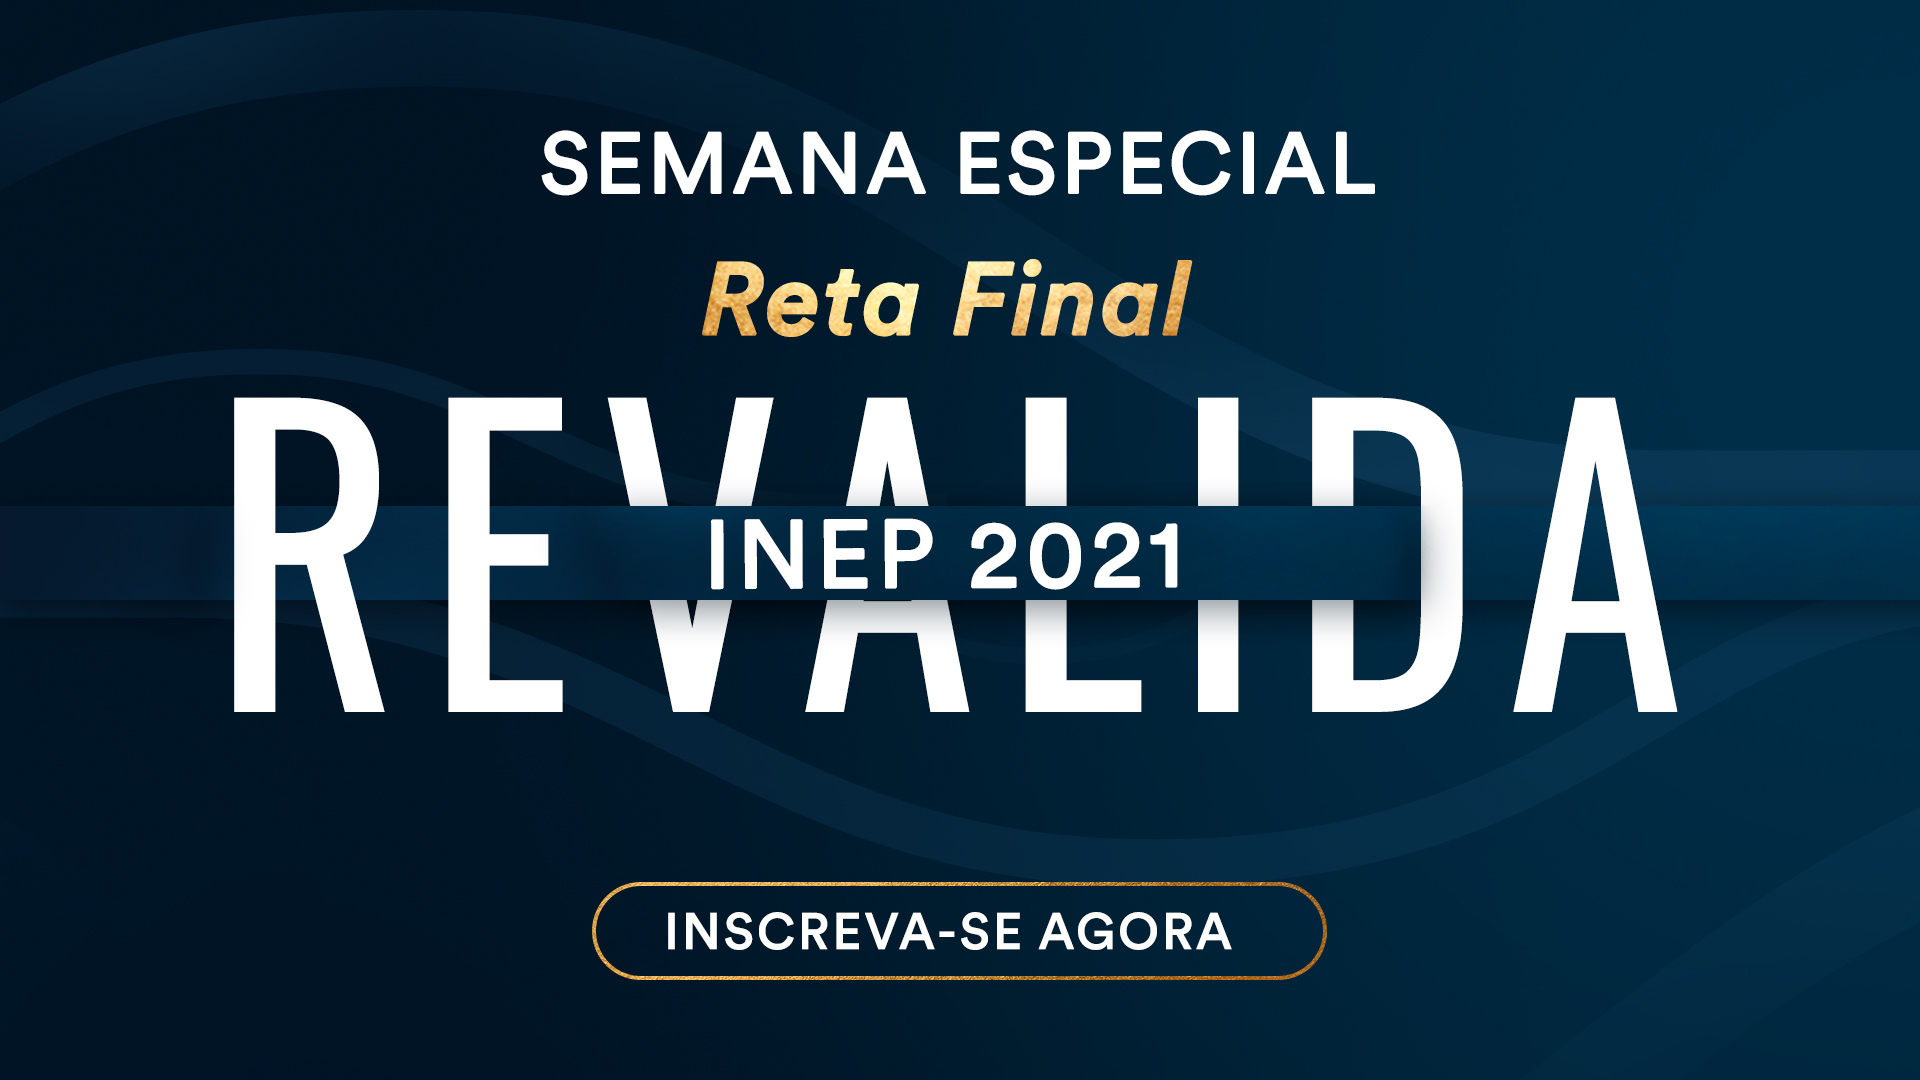 Evento EMED: Semana Especial Reta Final Revalida INEP 2021